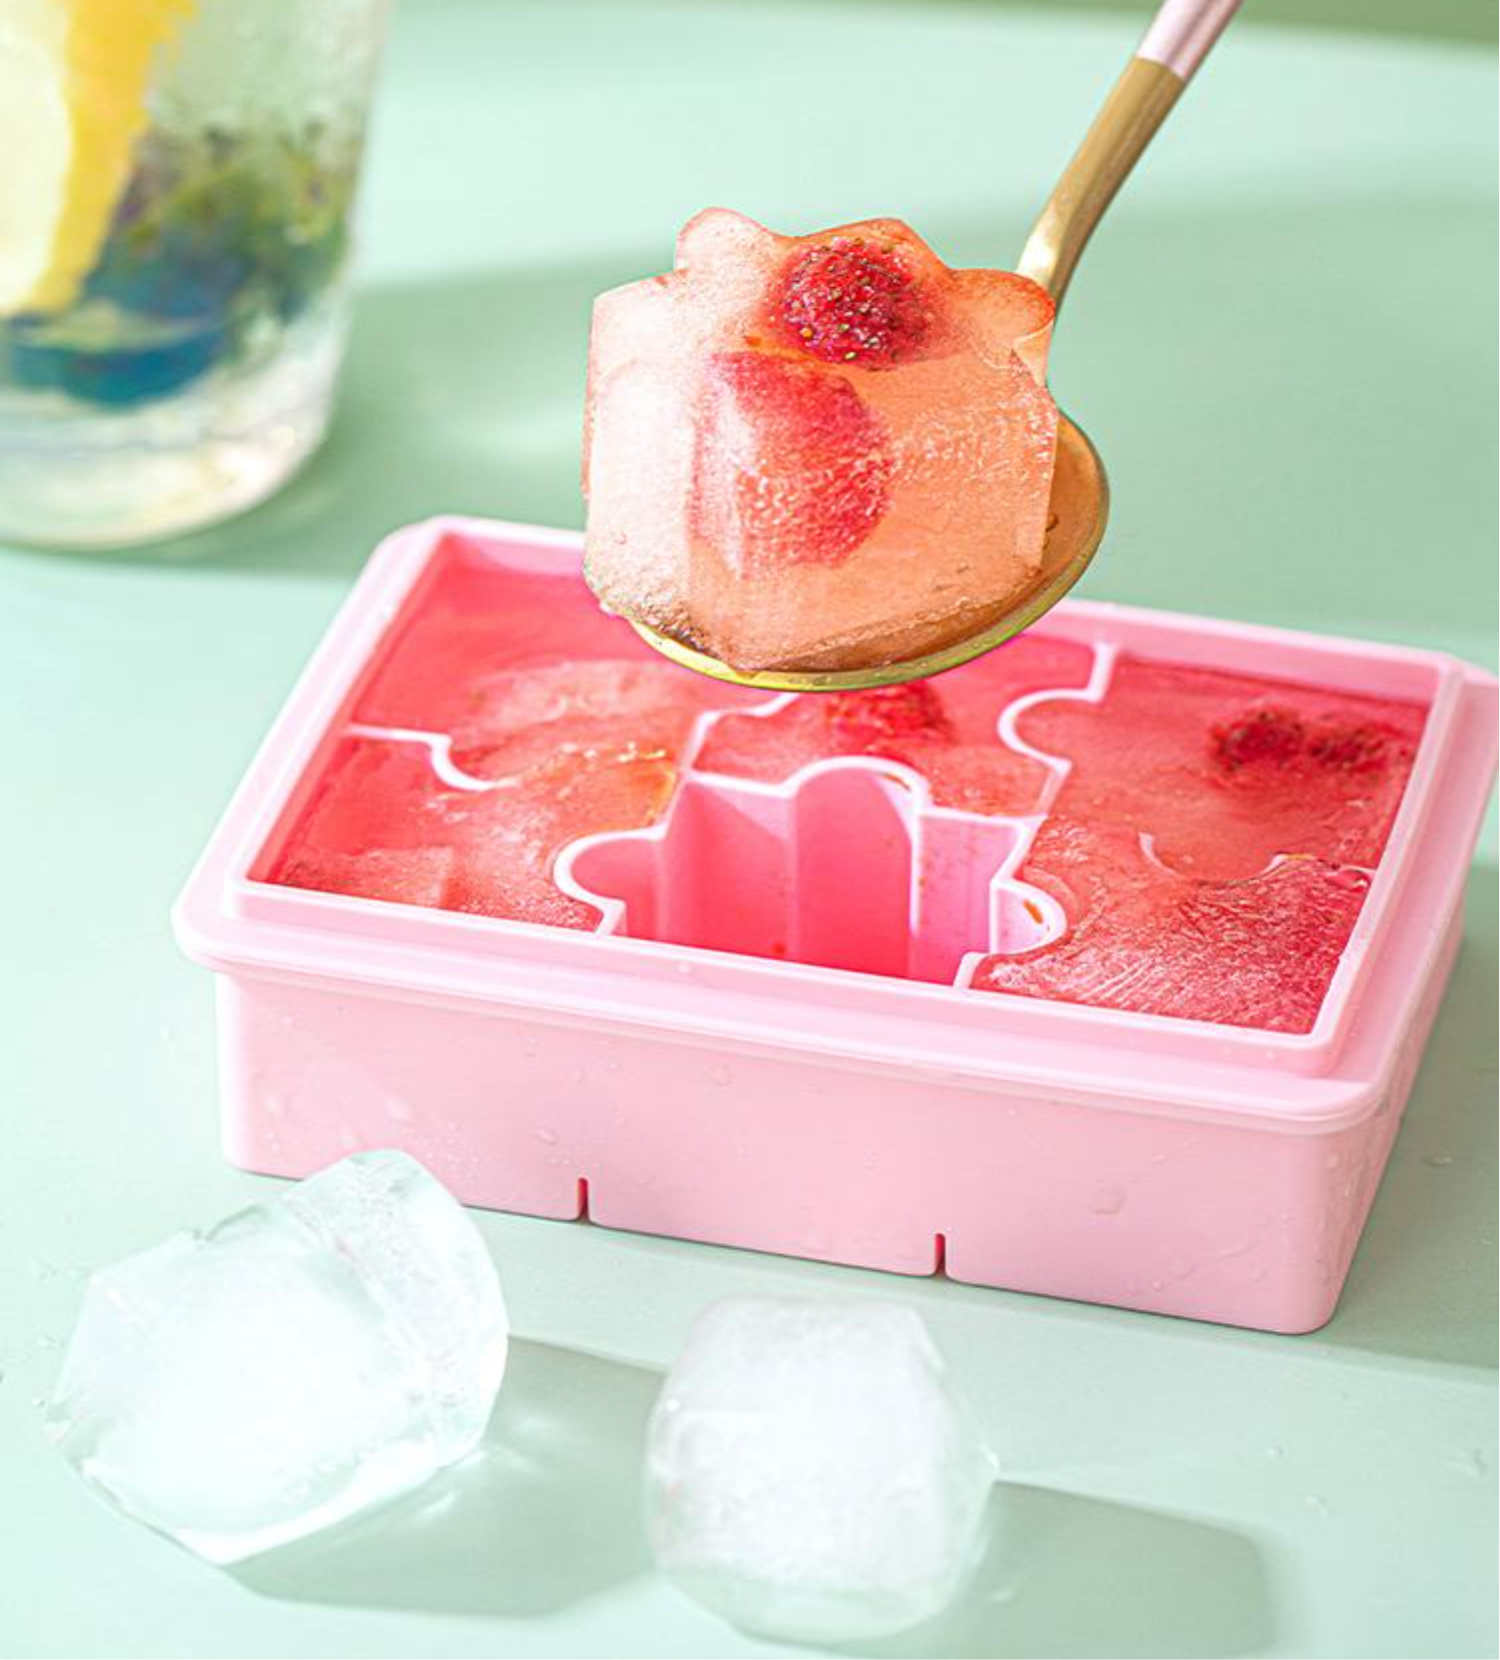 キノコ型シリコン製氷皿